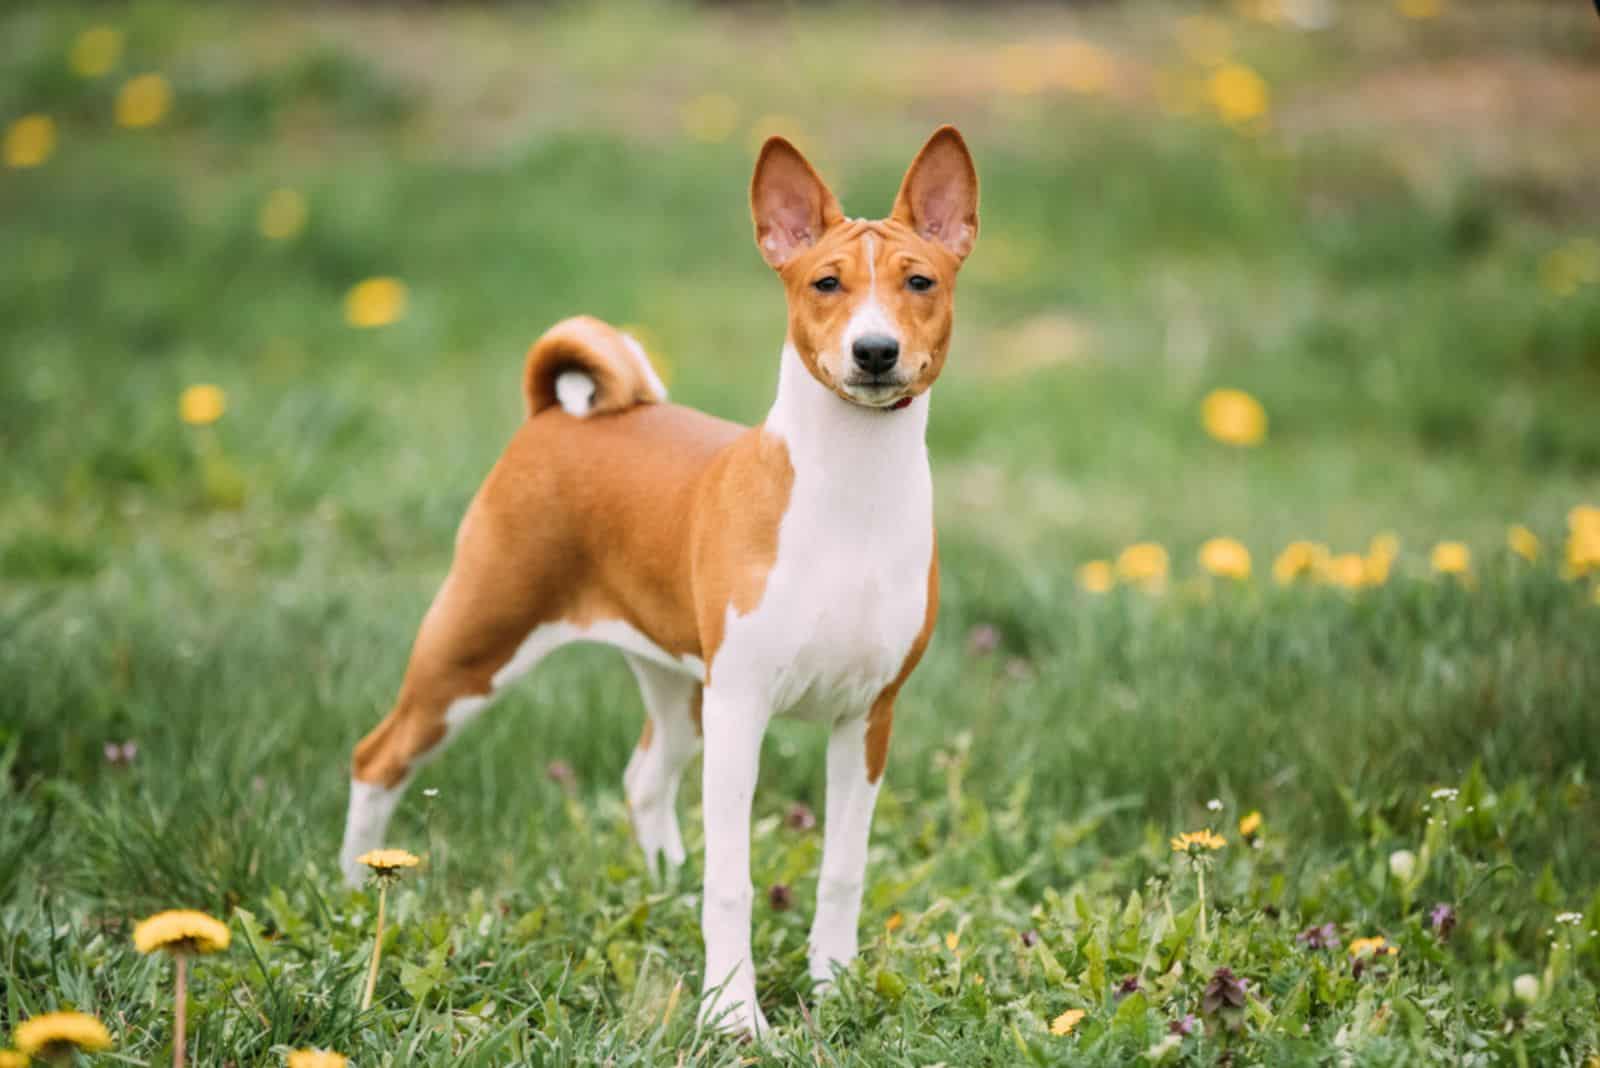 Basenji dog in a field